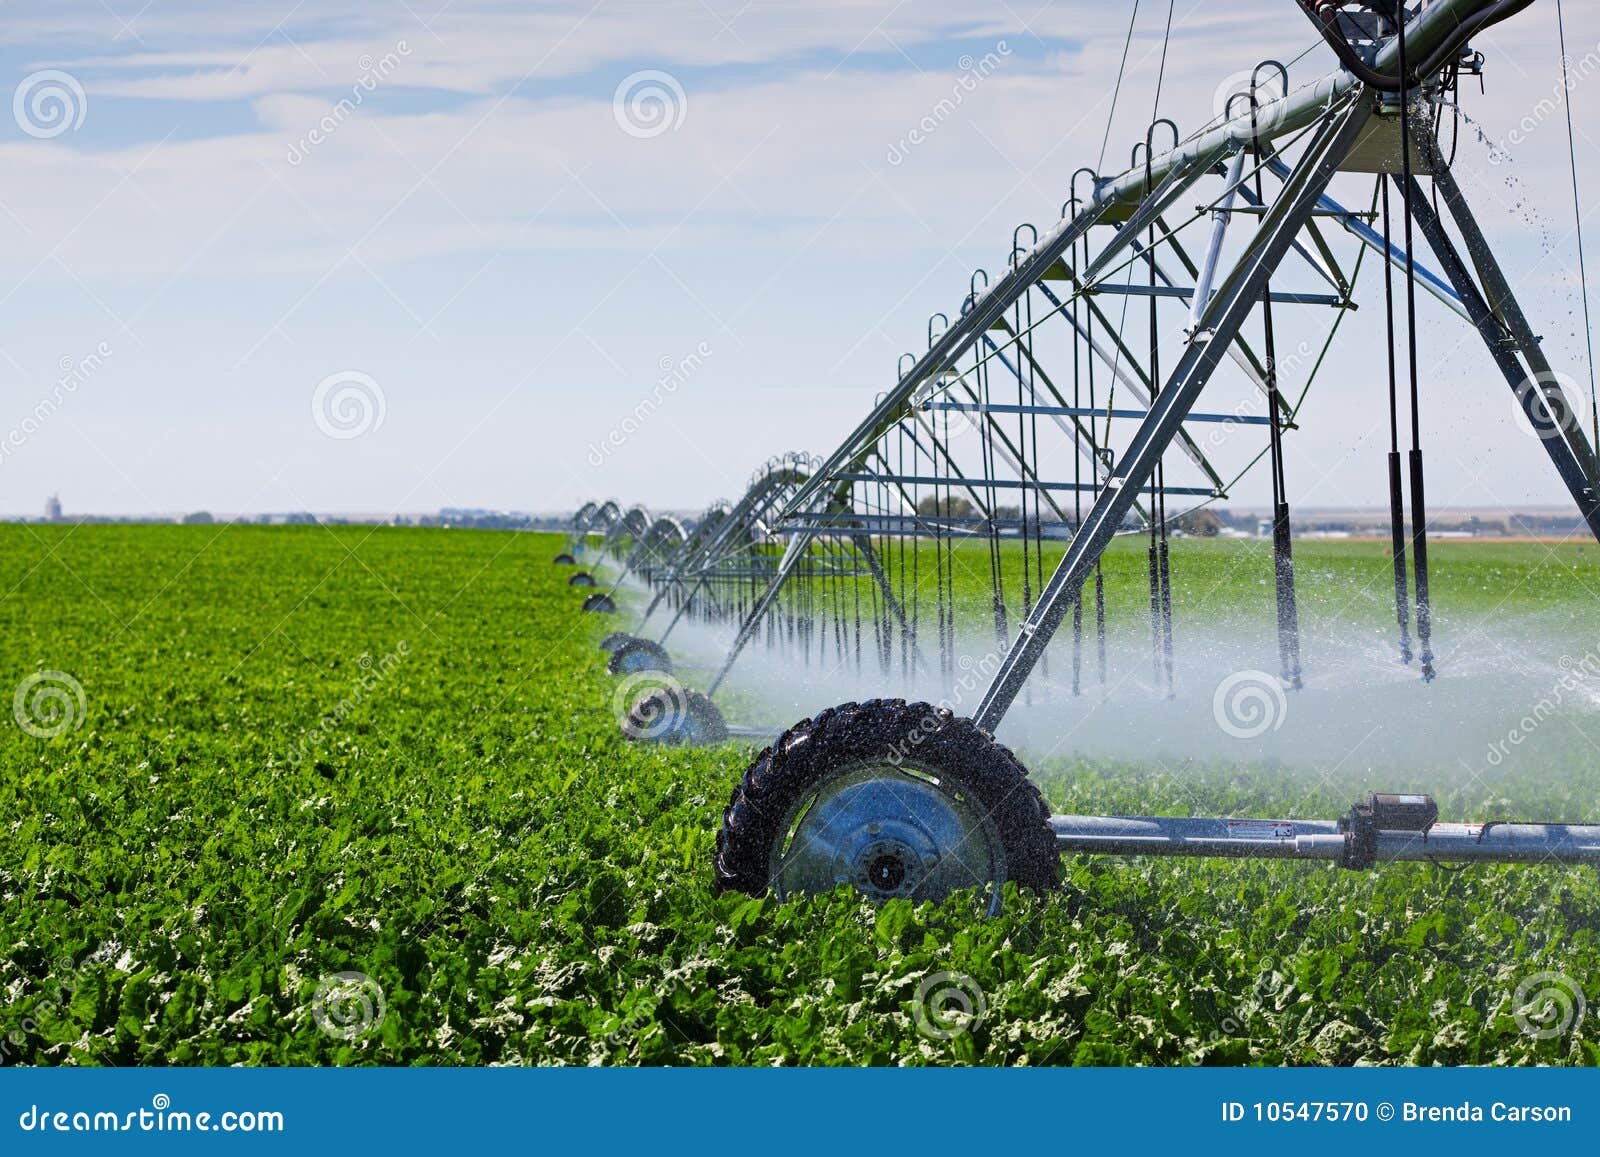 irrigation pivot